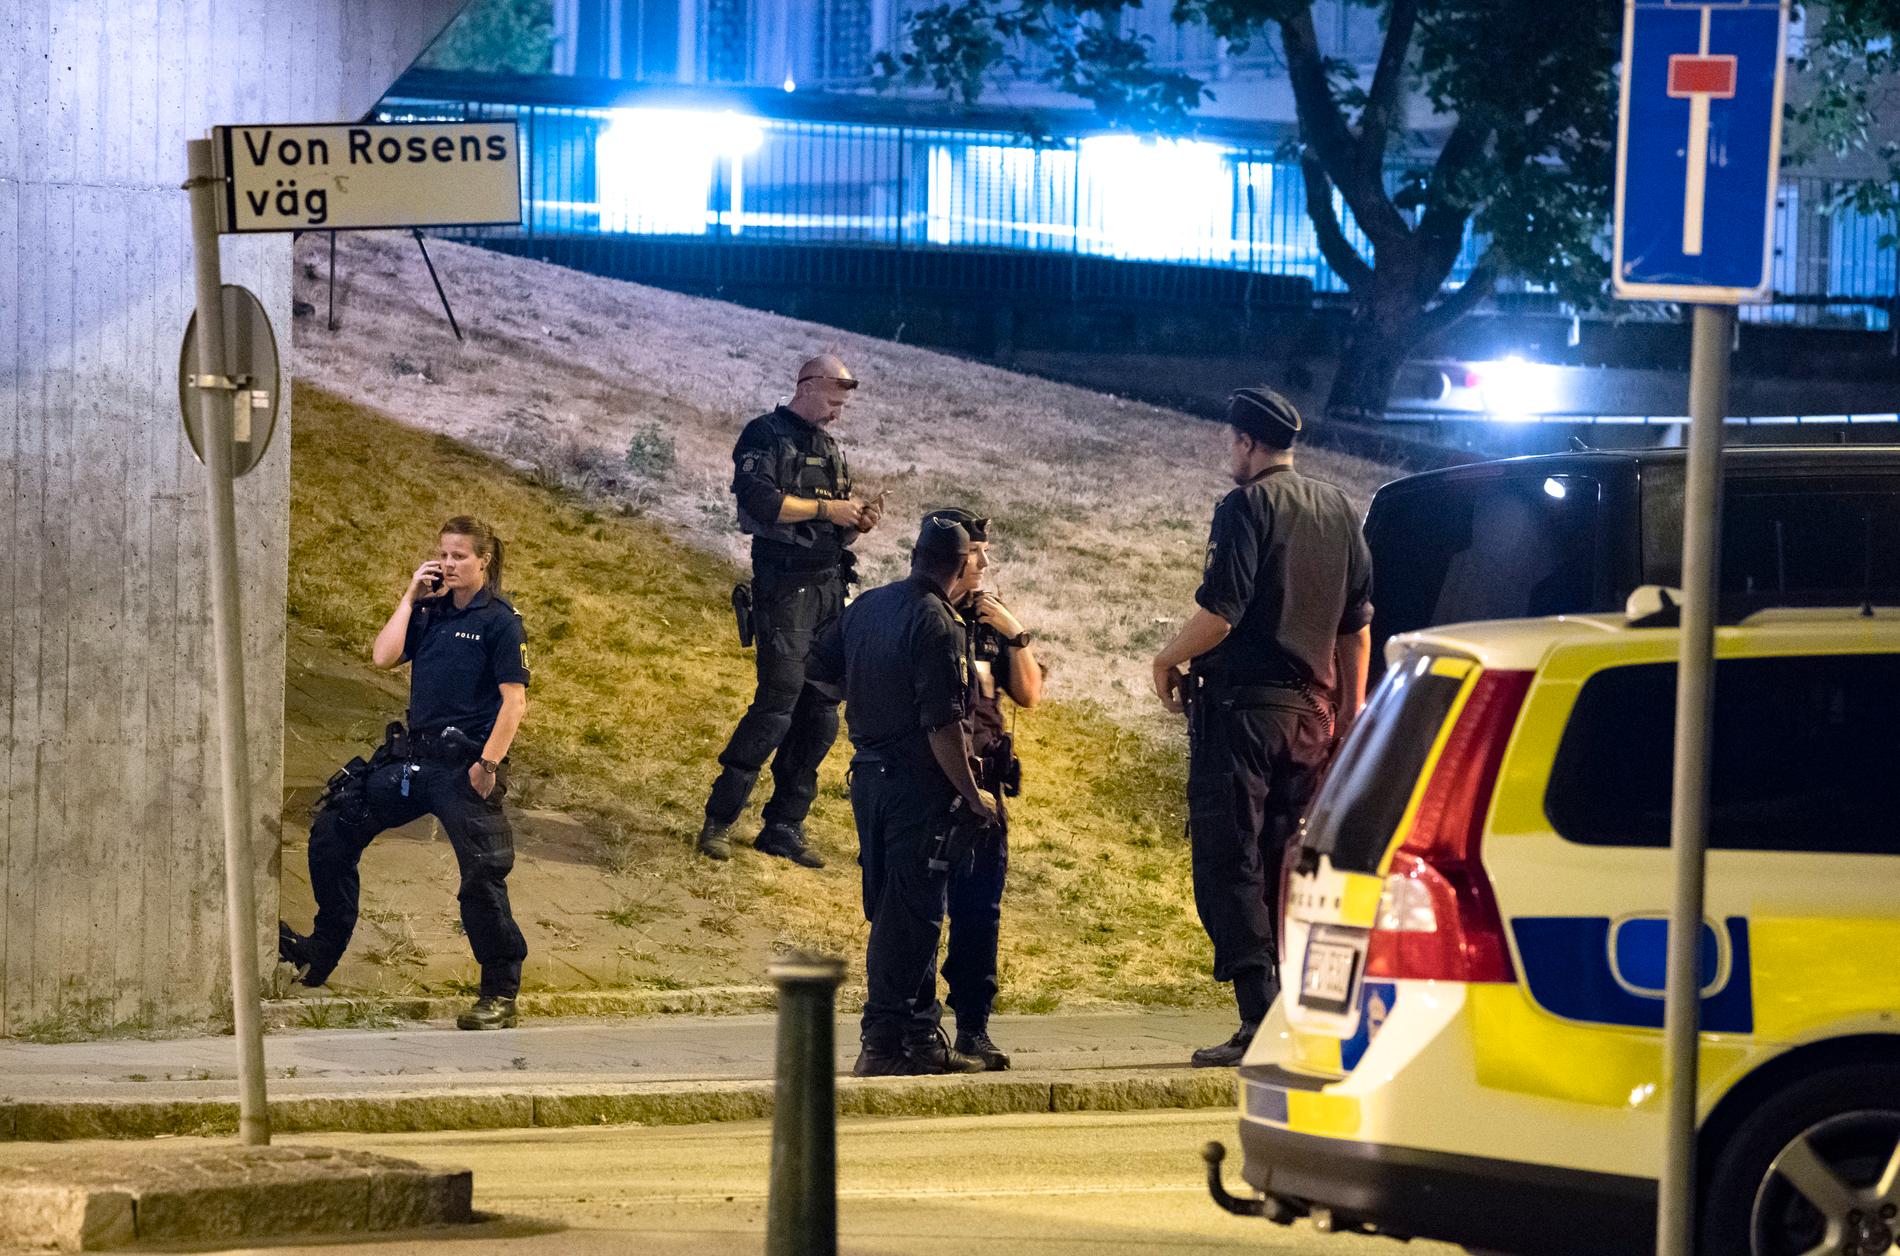 En man i 20-årsåldern sköts ihjäl i Rosengård i Malmö sent på måndagen.